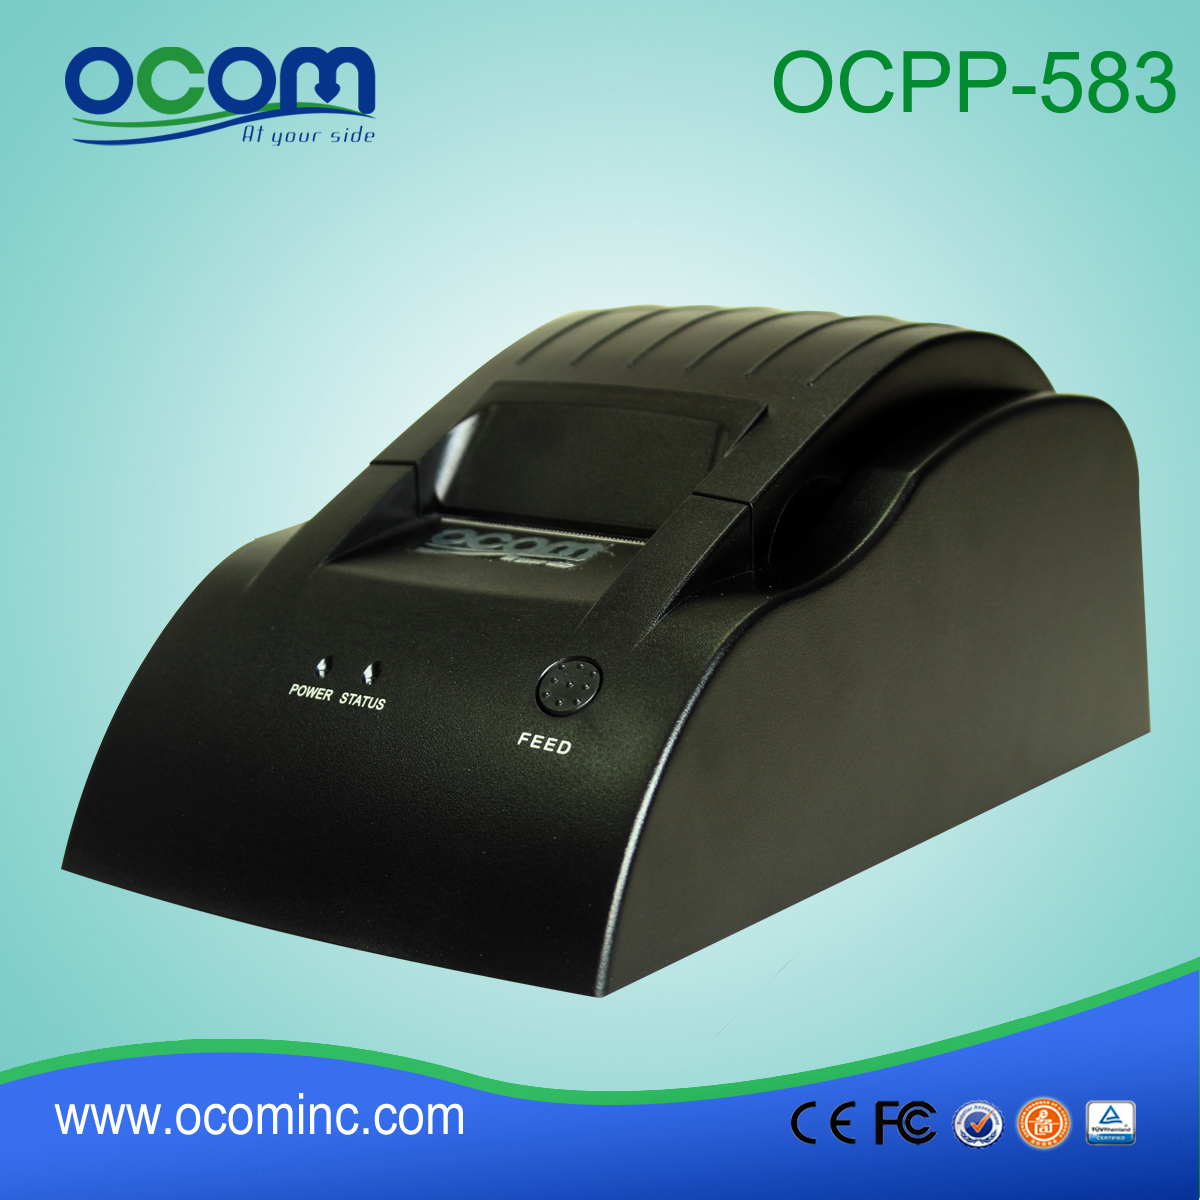 OCPP-583: 2015 preço impressora térmica direta, impressora térmica pos